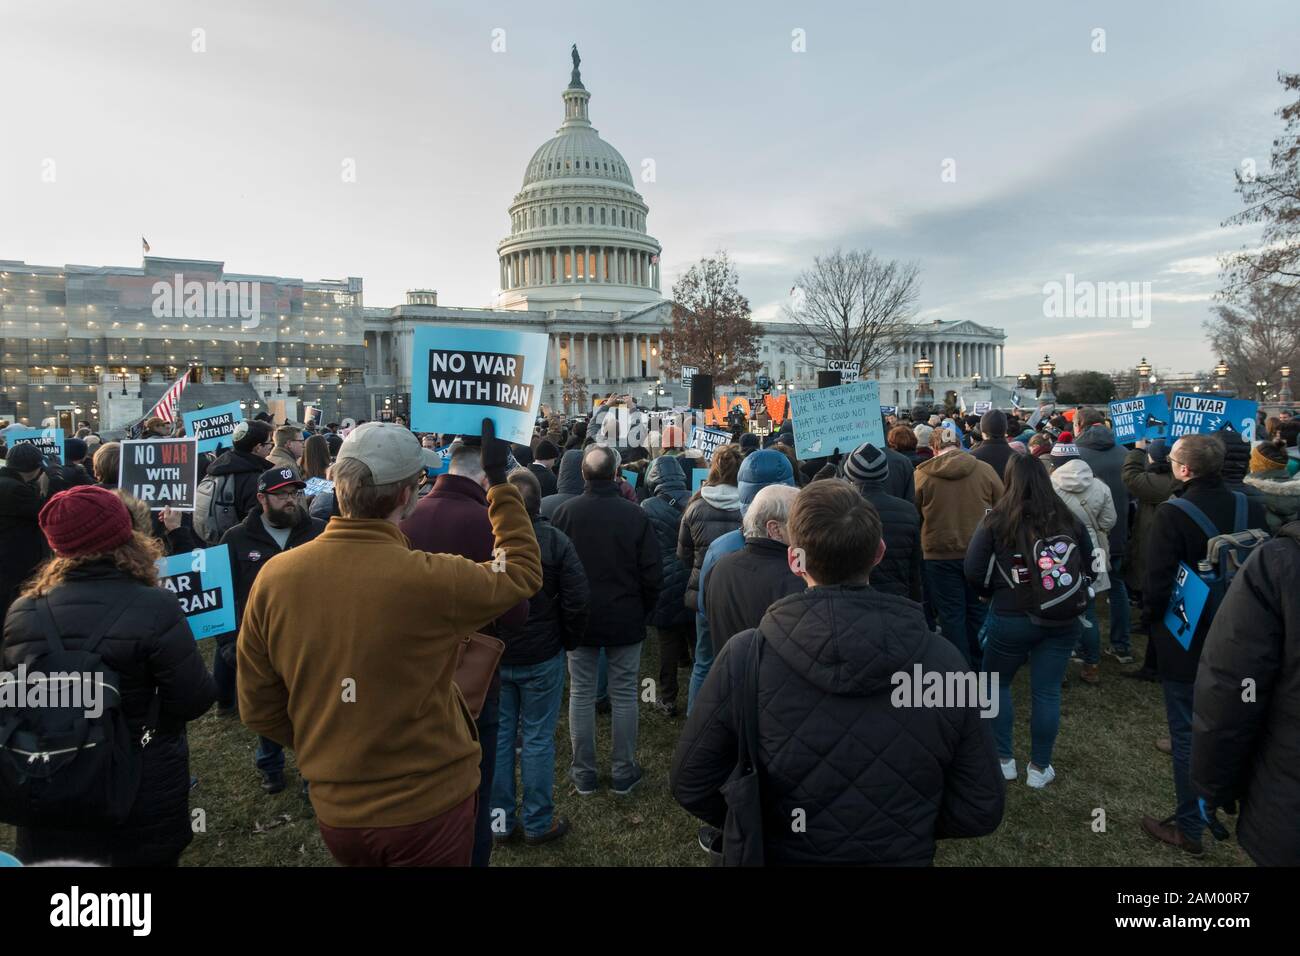 WASHINGTON, DC - JAN. 9, 2020 : rassemblement au Capitole pour protester contre le Président irresponsable du Trump alarmistes de la guerre avec l'Iran, et le Trump's sans passer par le Congrès lors de l'autorisation générale iranien Qassem Soleimani assassinat. Banque D'Images